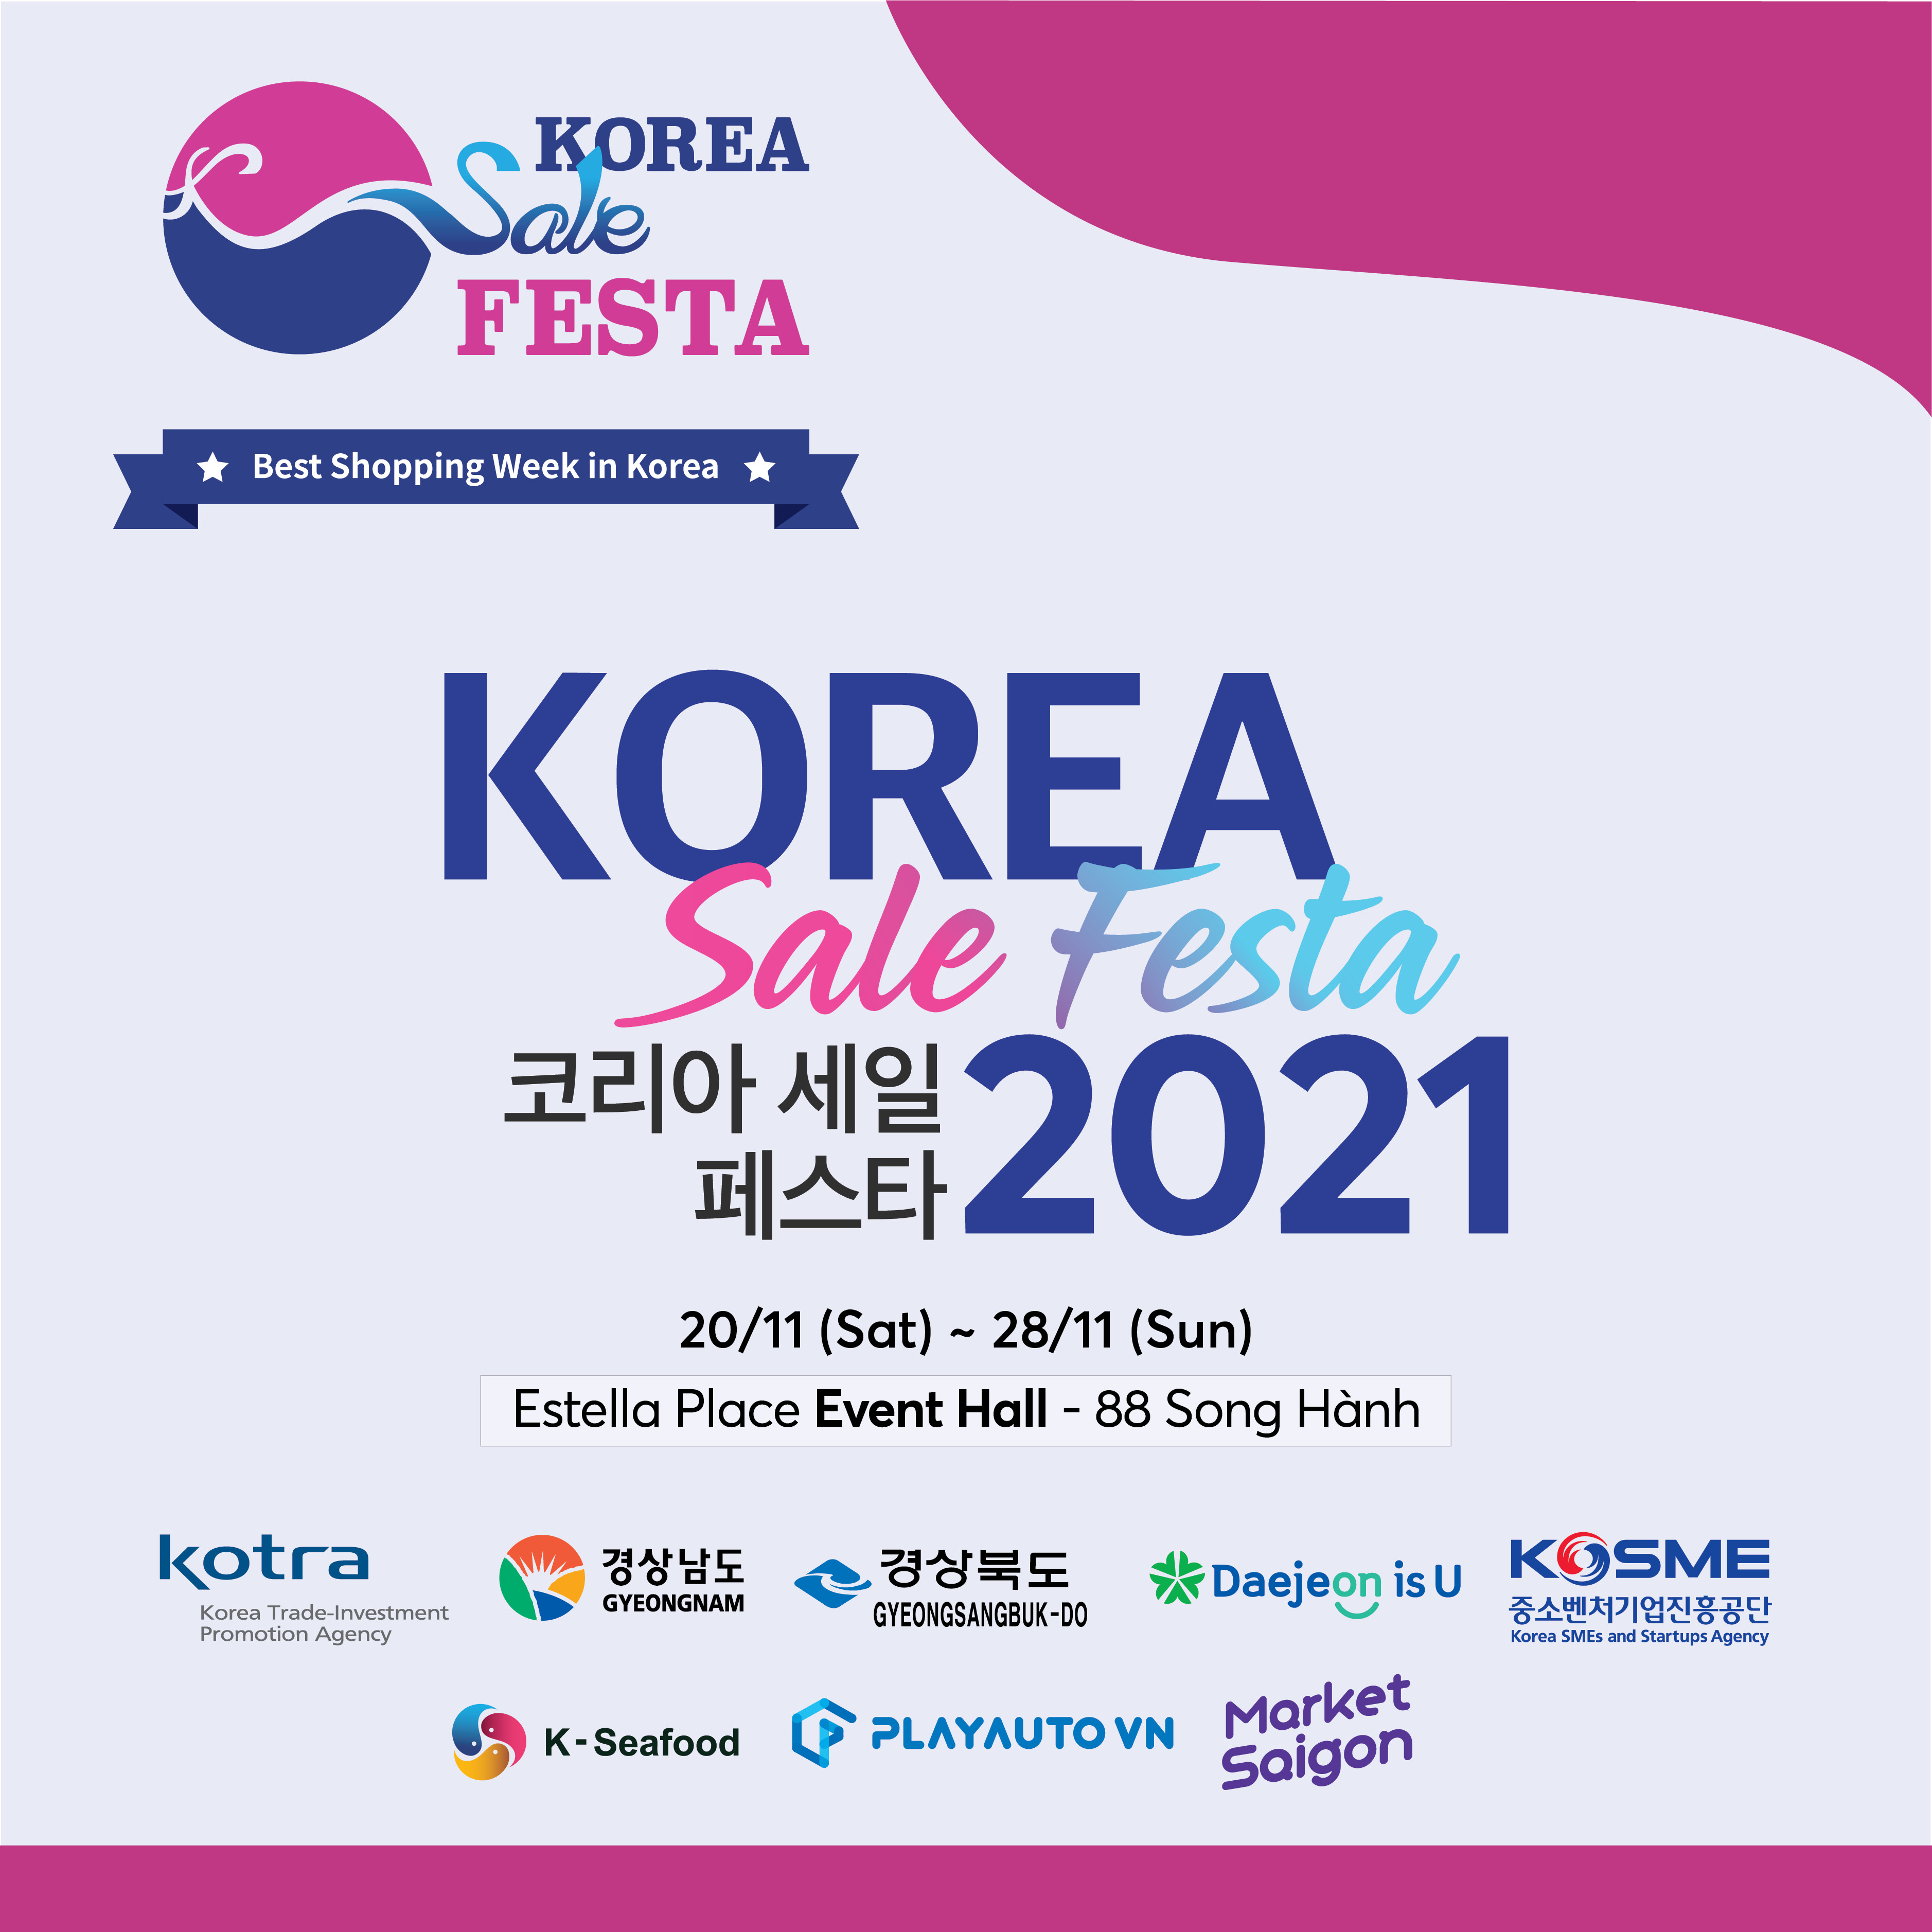 KOREA SALE FESTA 2021